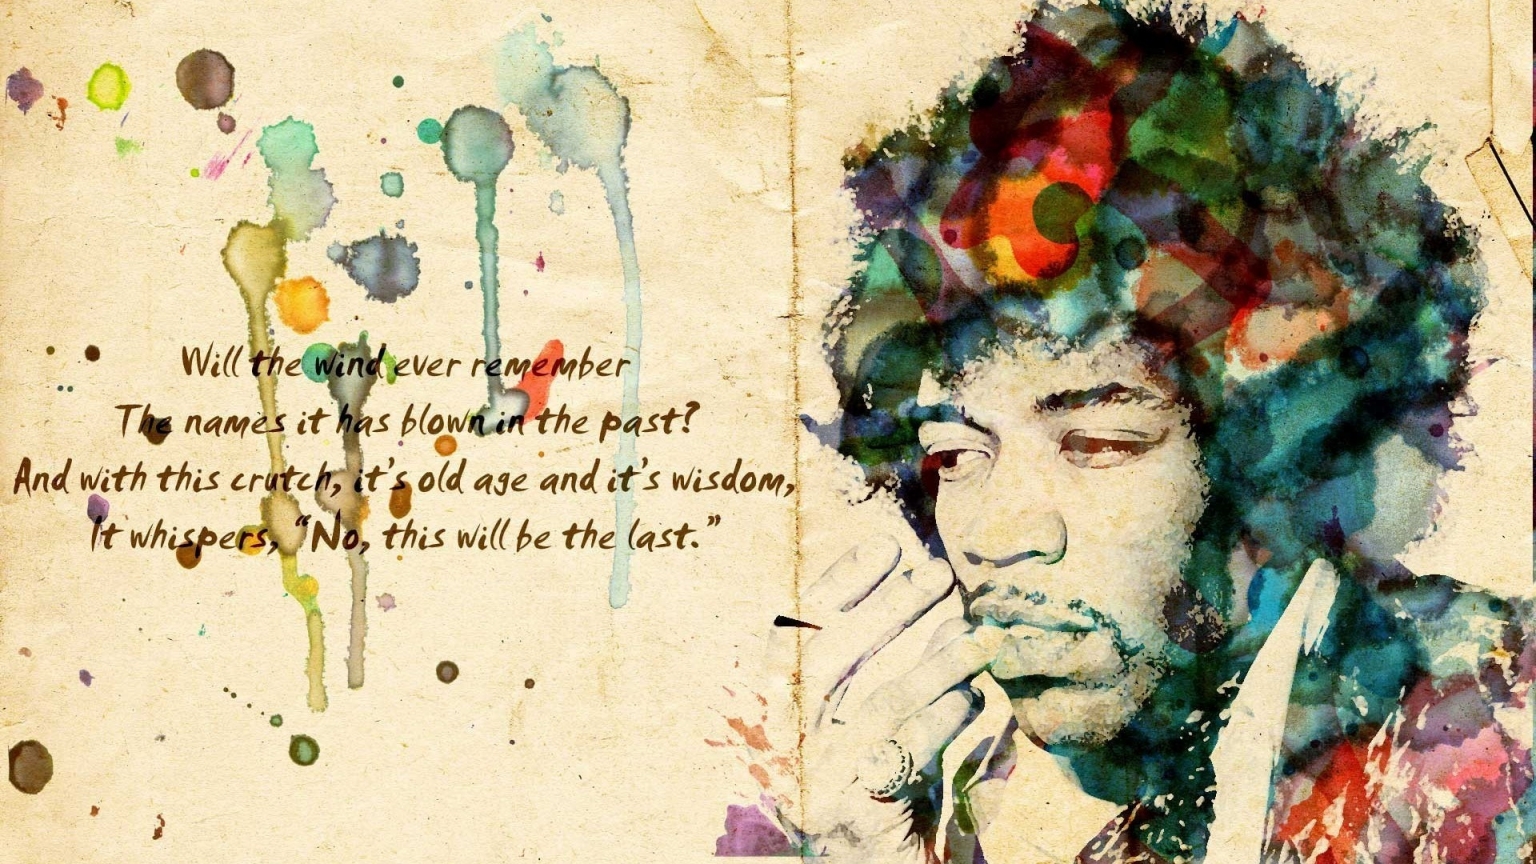 Jimi Hendrix Artwork for 1536 x 864 HDTV resolution